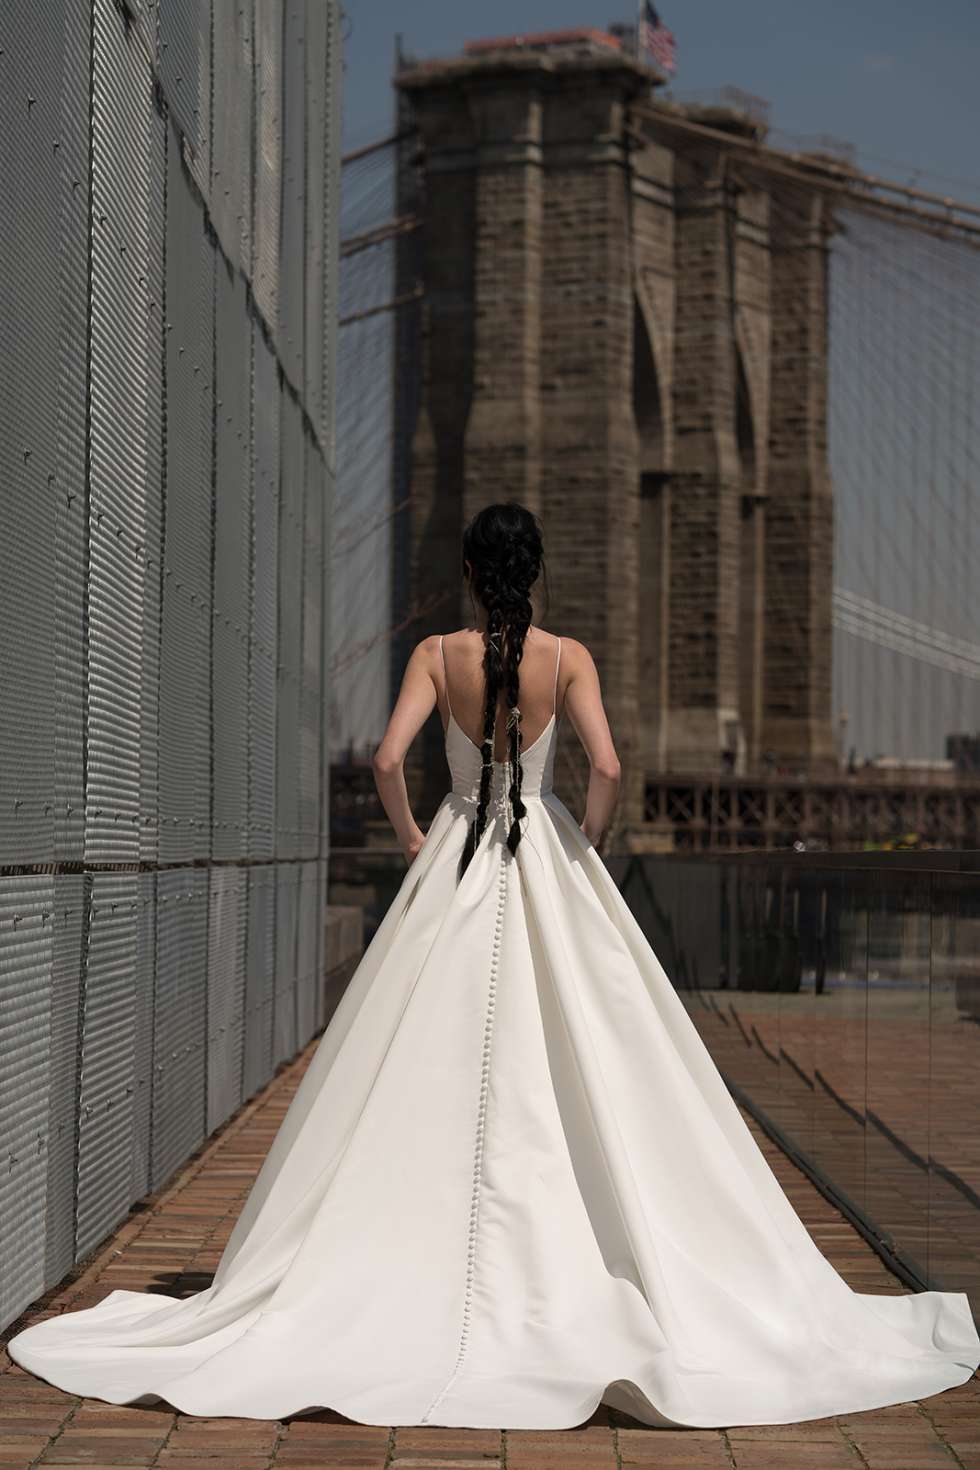 أحدث مجموعات فساتين الزفاف لعام 2019 من تصميم ريتا فينيريس